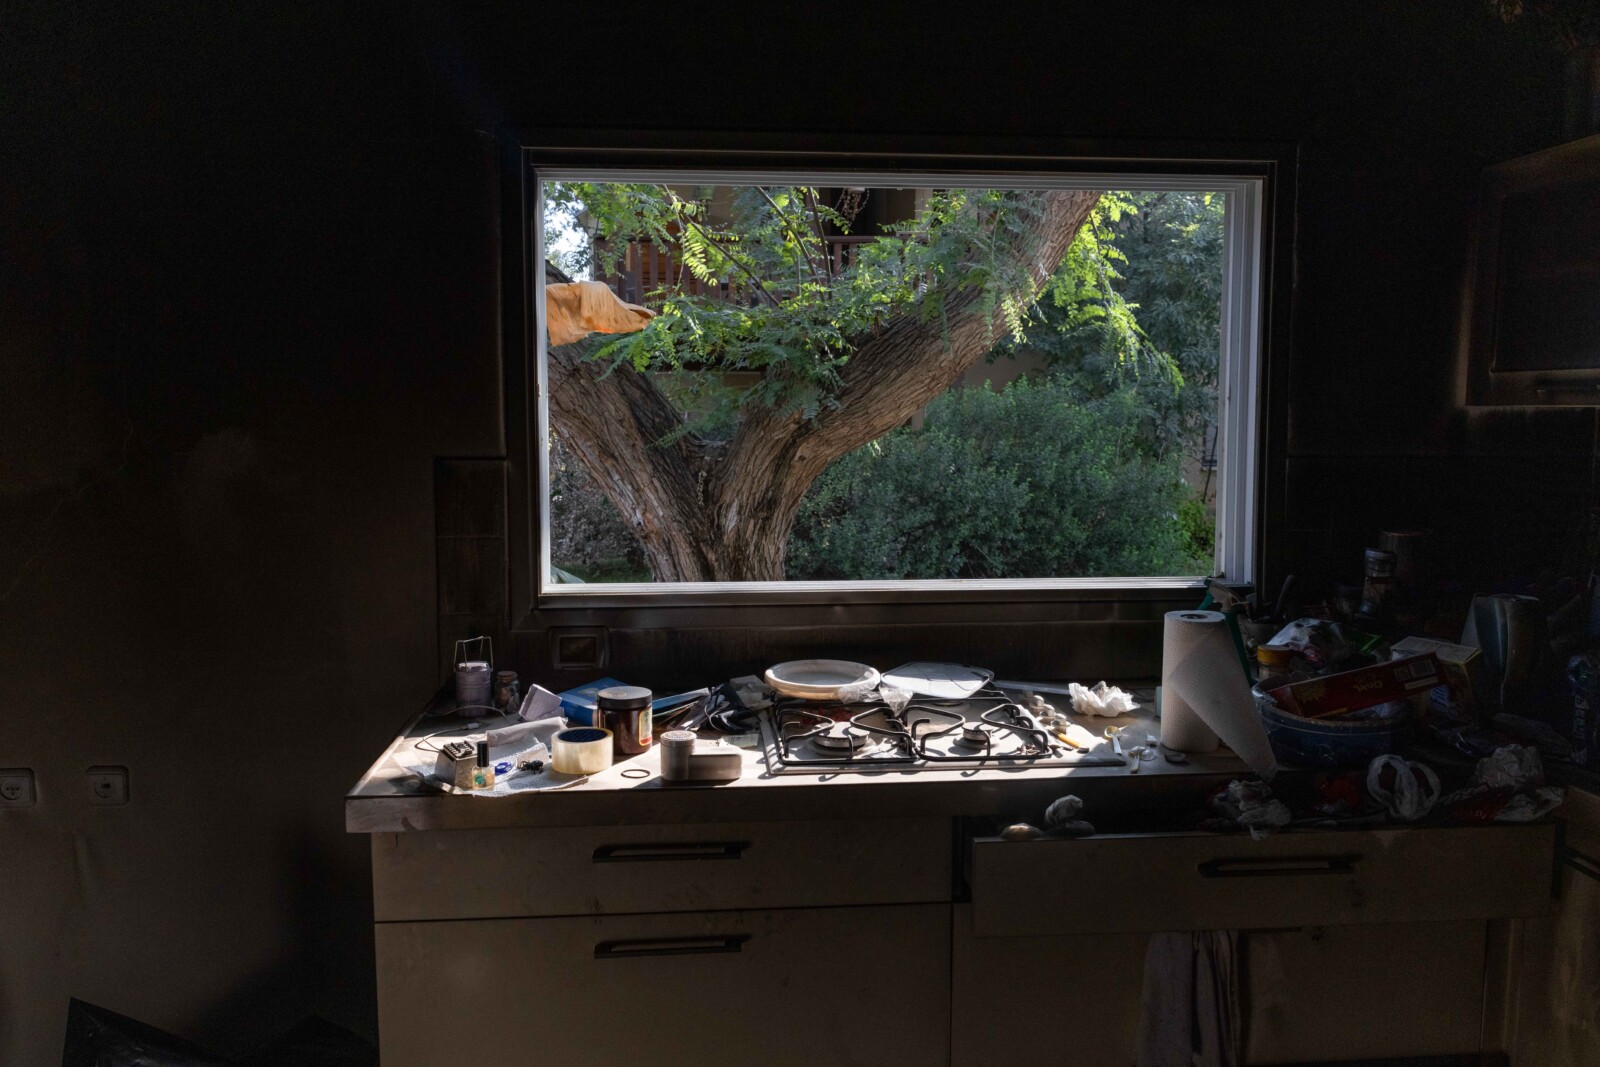 כלי מטבח כמו שנשארו מאז 7 באוקטובר, בבית משפחת רותם שושני (צילום: כדיה לוי)